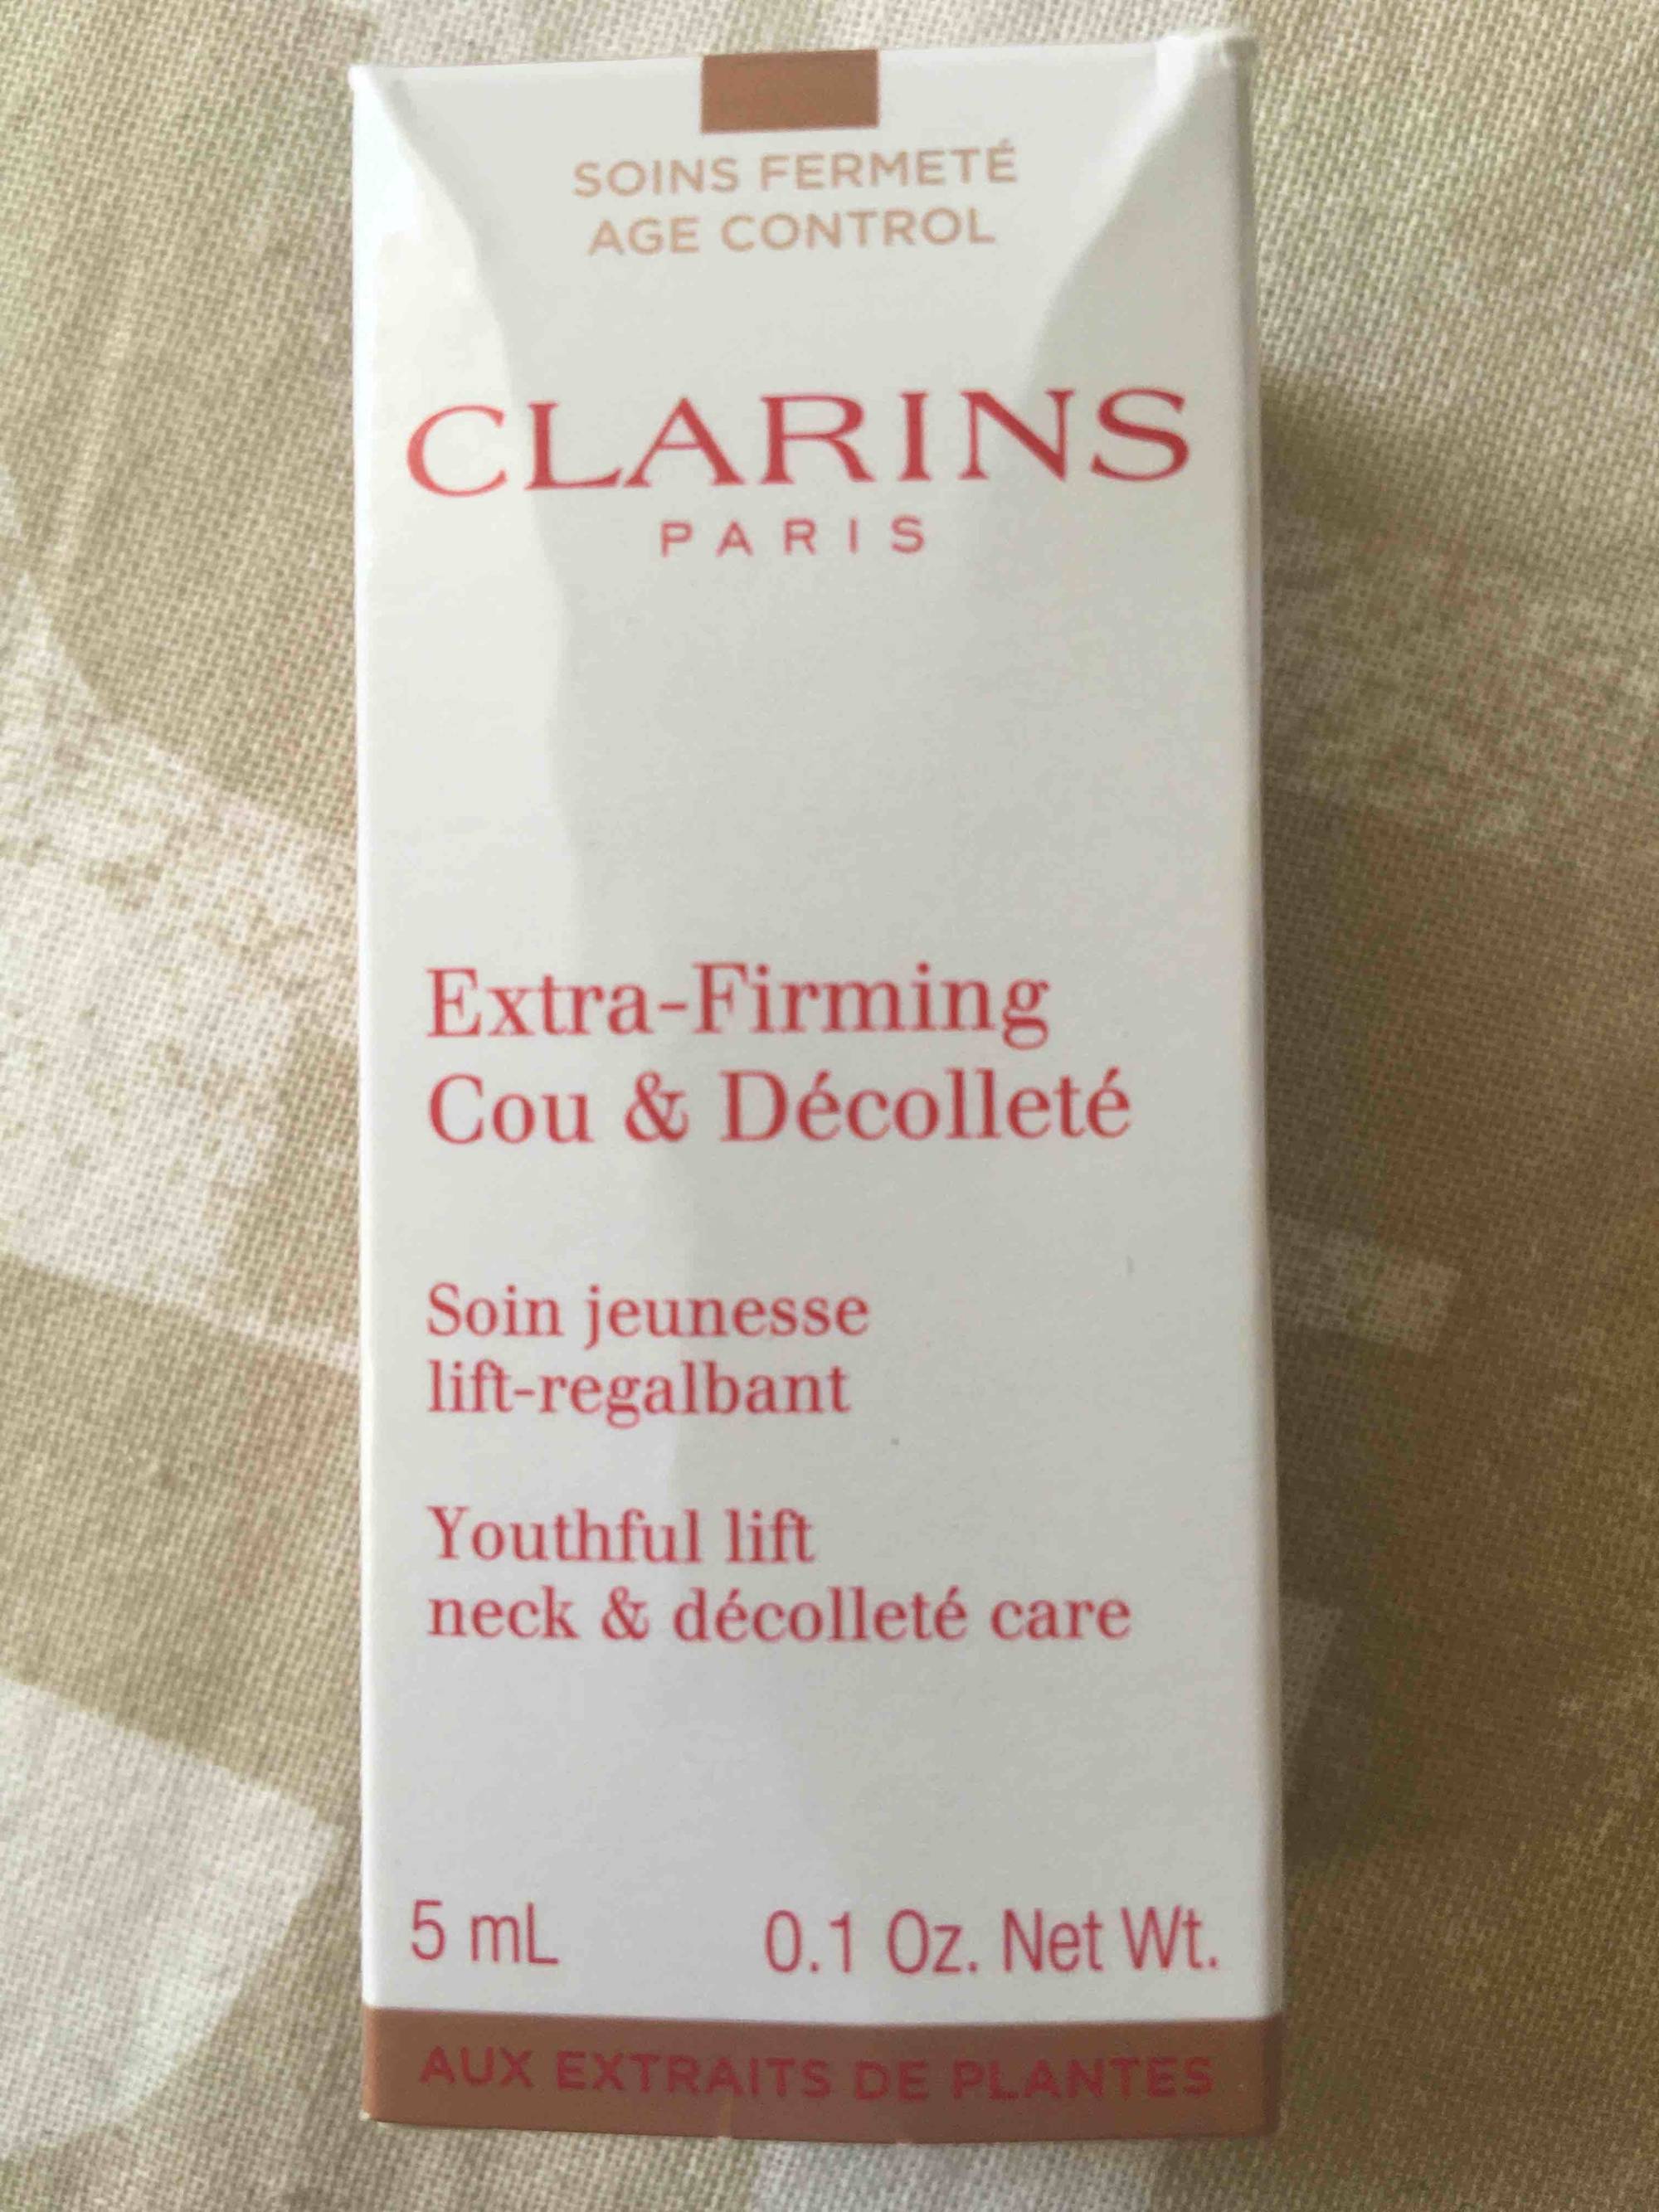 CLARINS PARIS - Extra-firming cou & décolleté - Soin jeunesse